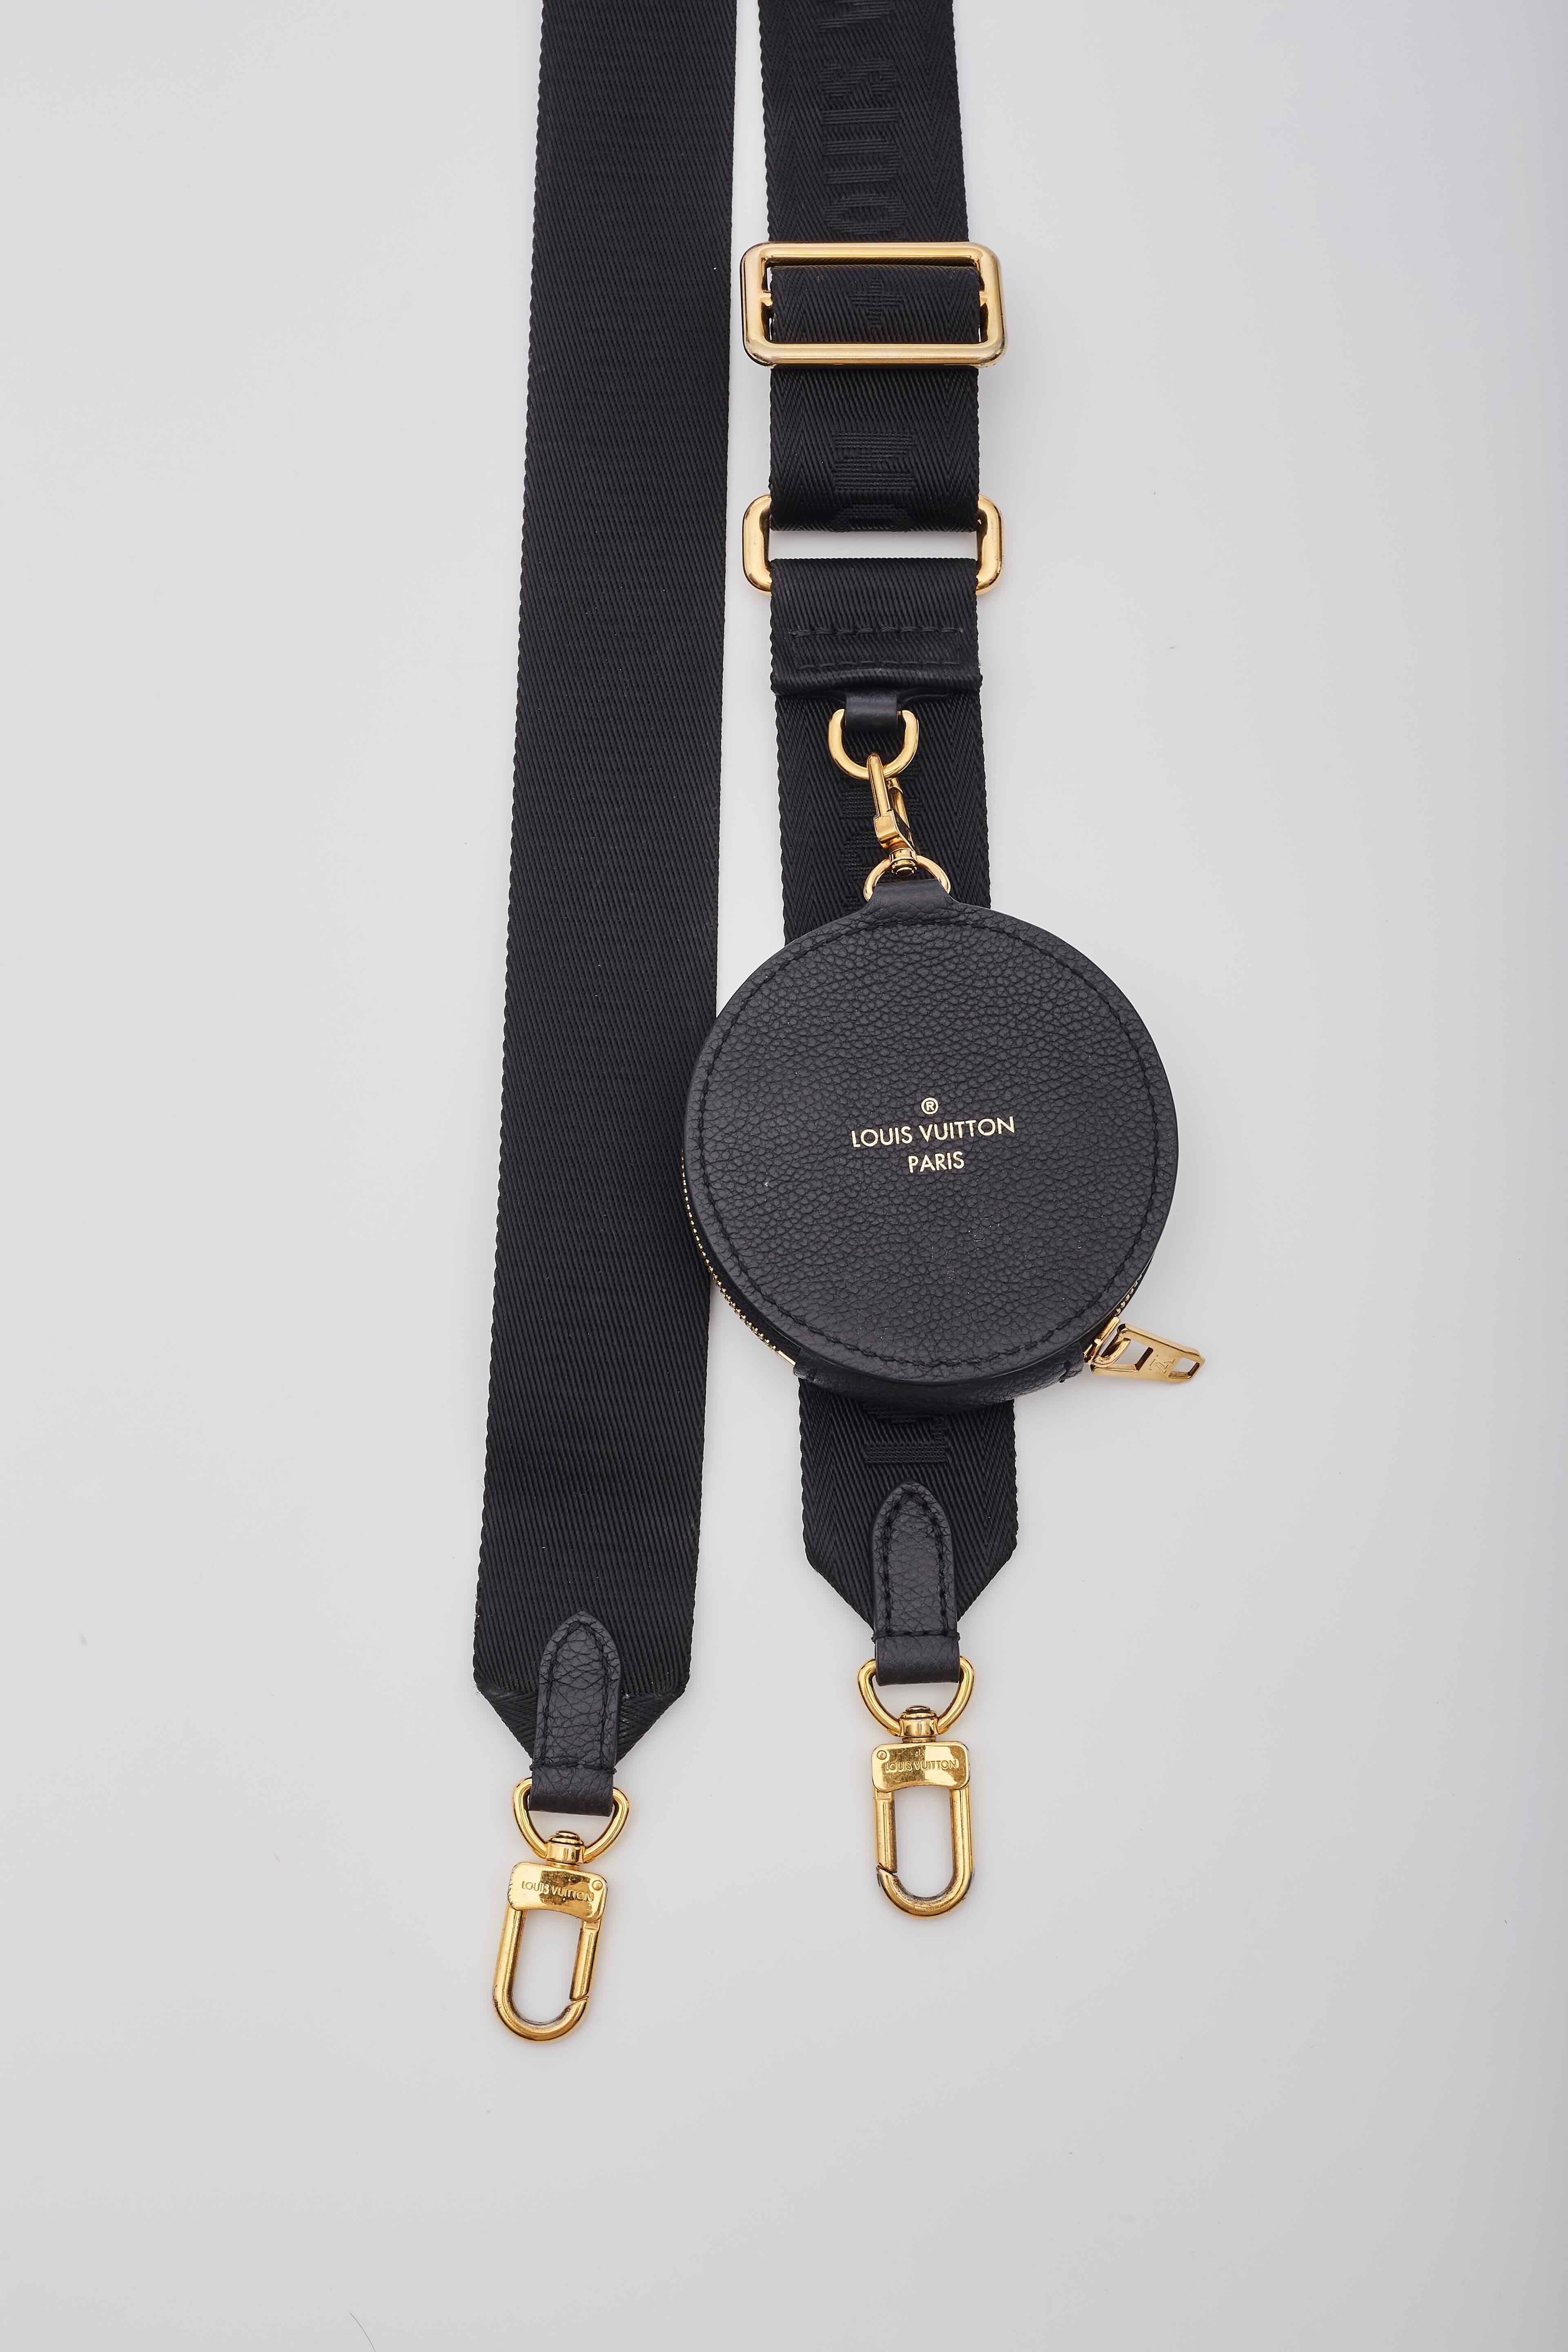 Louis Vuitton Monogram Black Empreinte Papillon BB Bag For Sale 2